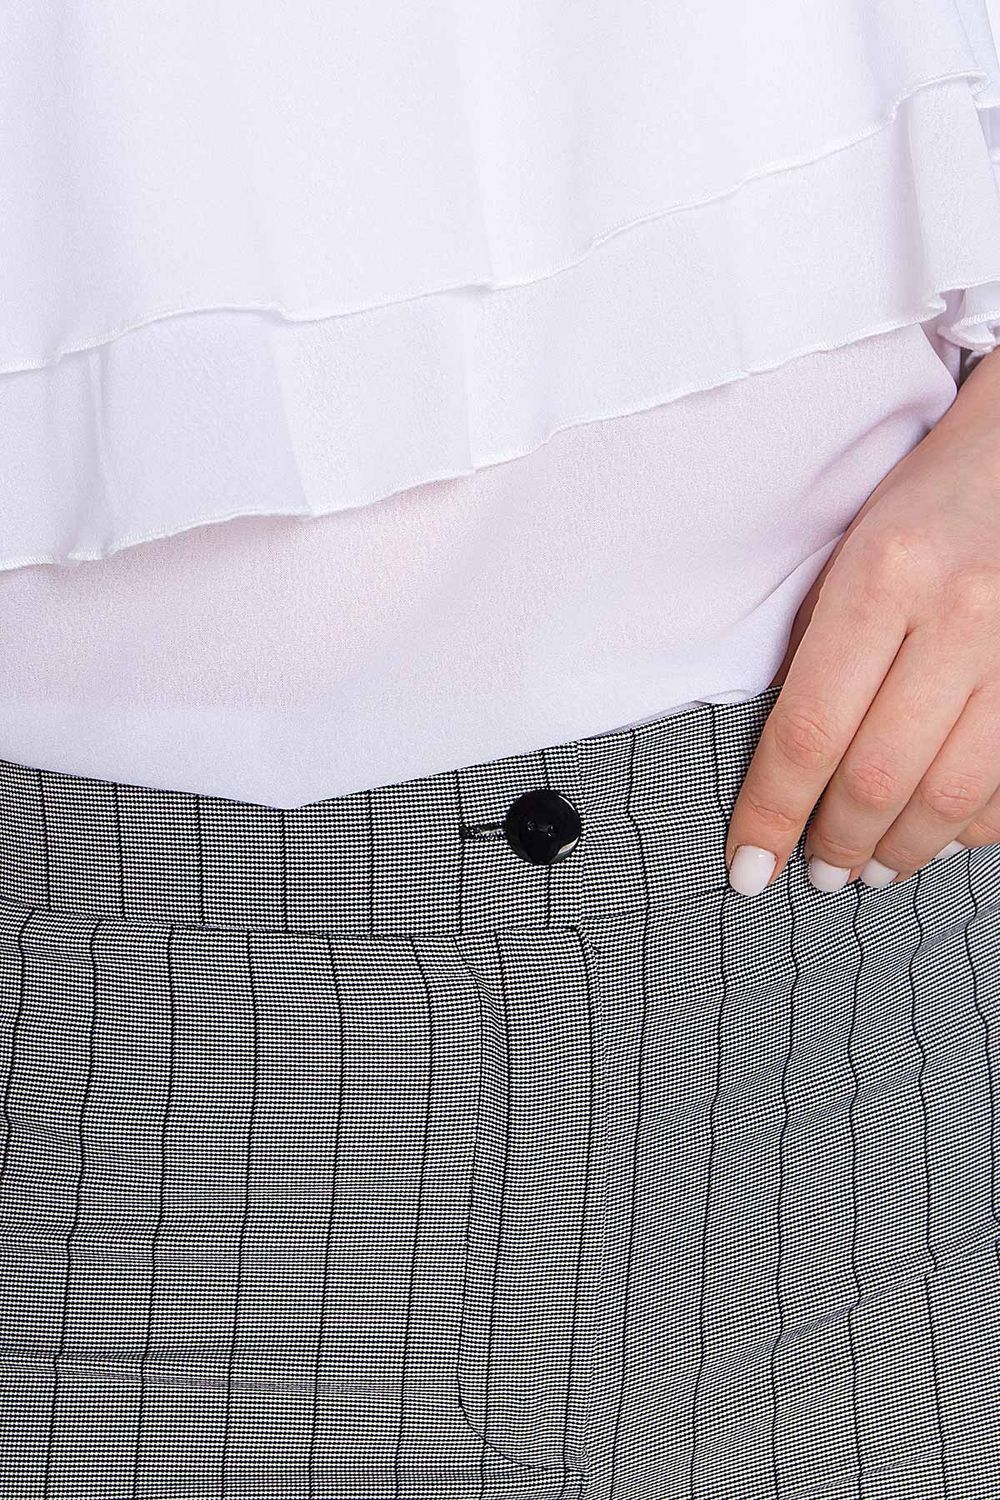 Жіночі брюки із завищеною талією в смужку - фото